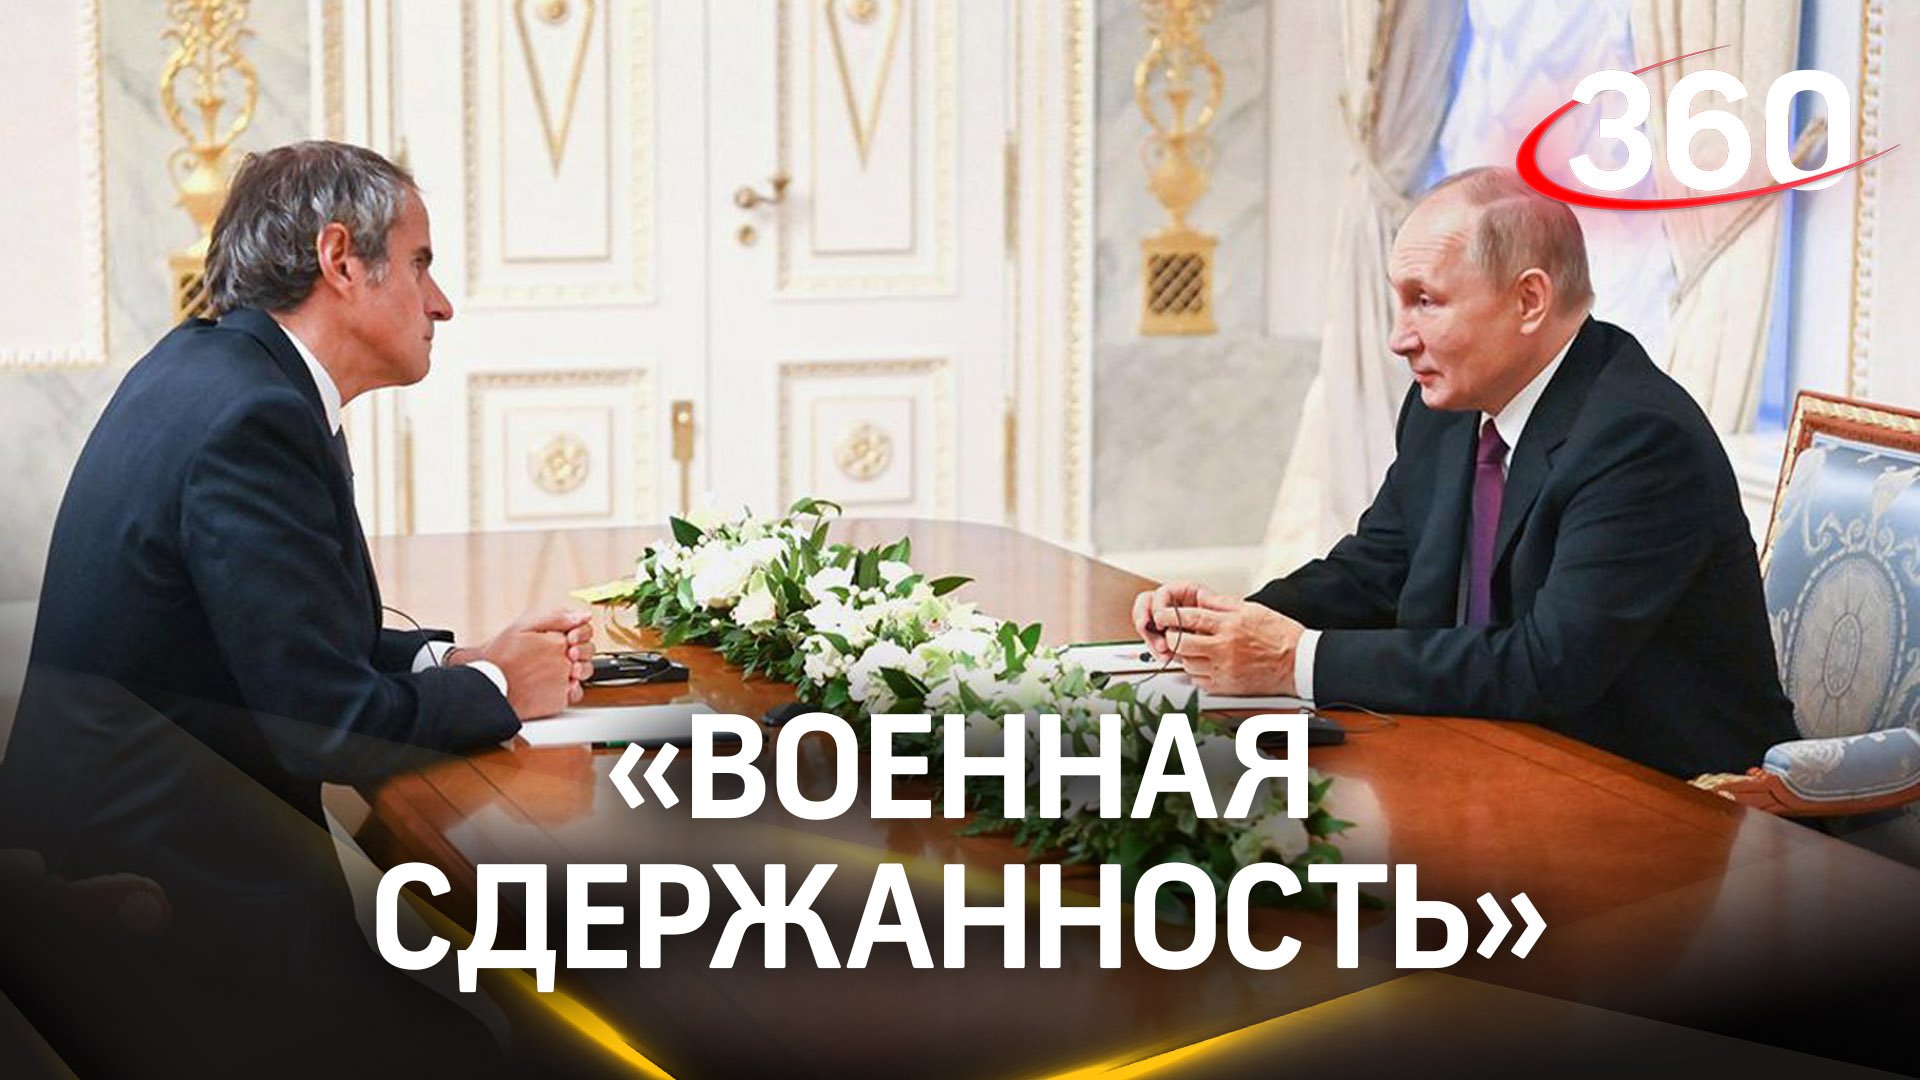 Гросси на встрече с Путиным призвал к военной сдержанности вокруг ЗАЭС - заявления МАГАТЭ